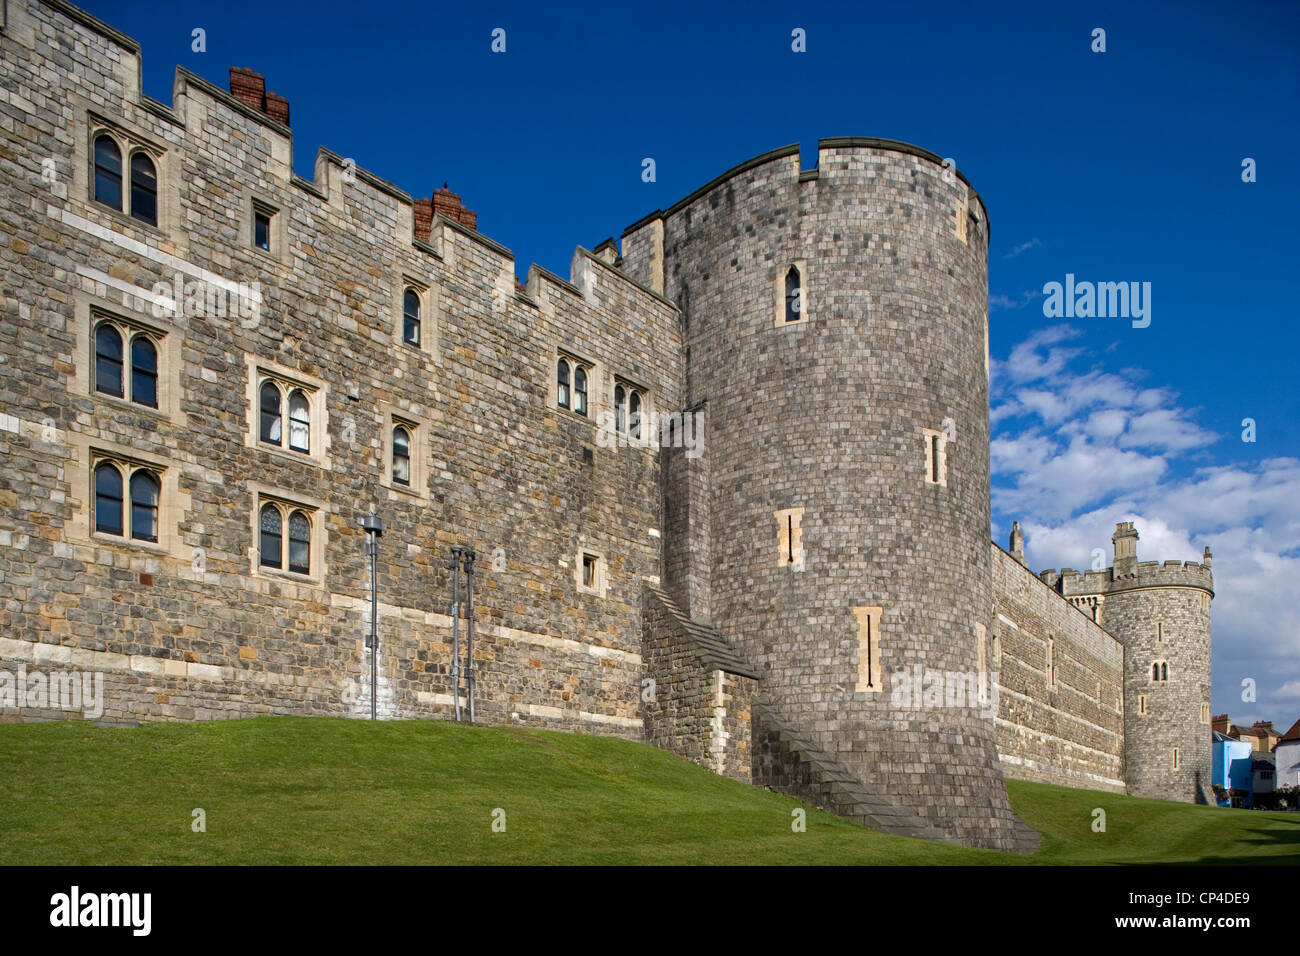 Regno Unito - Inghilterra - Berkshire - Windsor. Una torre del castello, Casa della monarchia inglese da più di 900 anni. Foto Stock